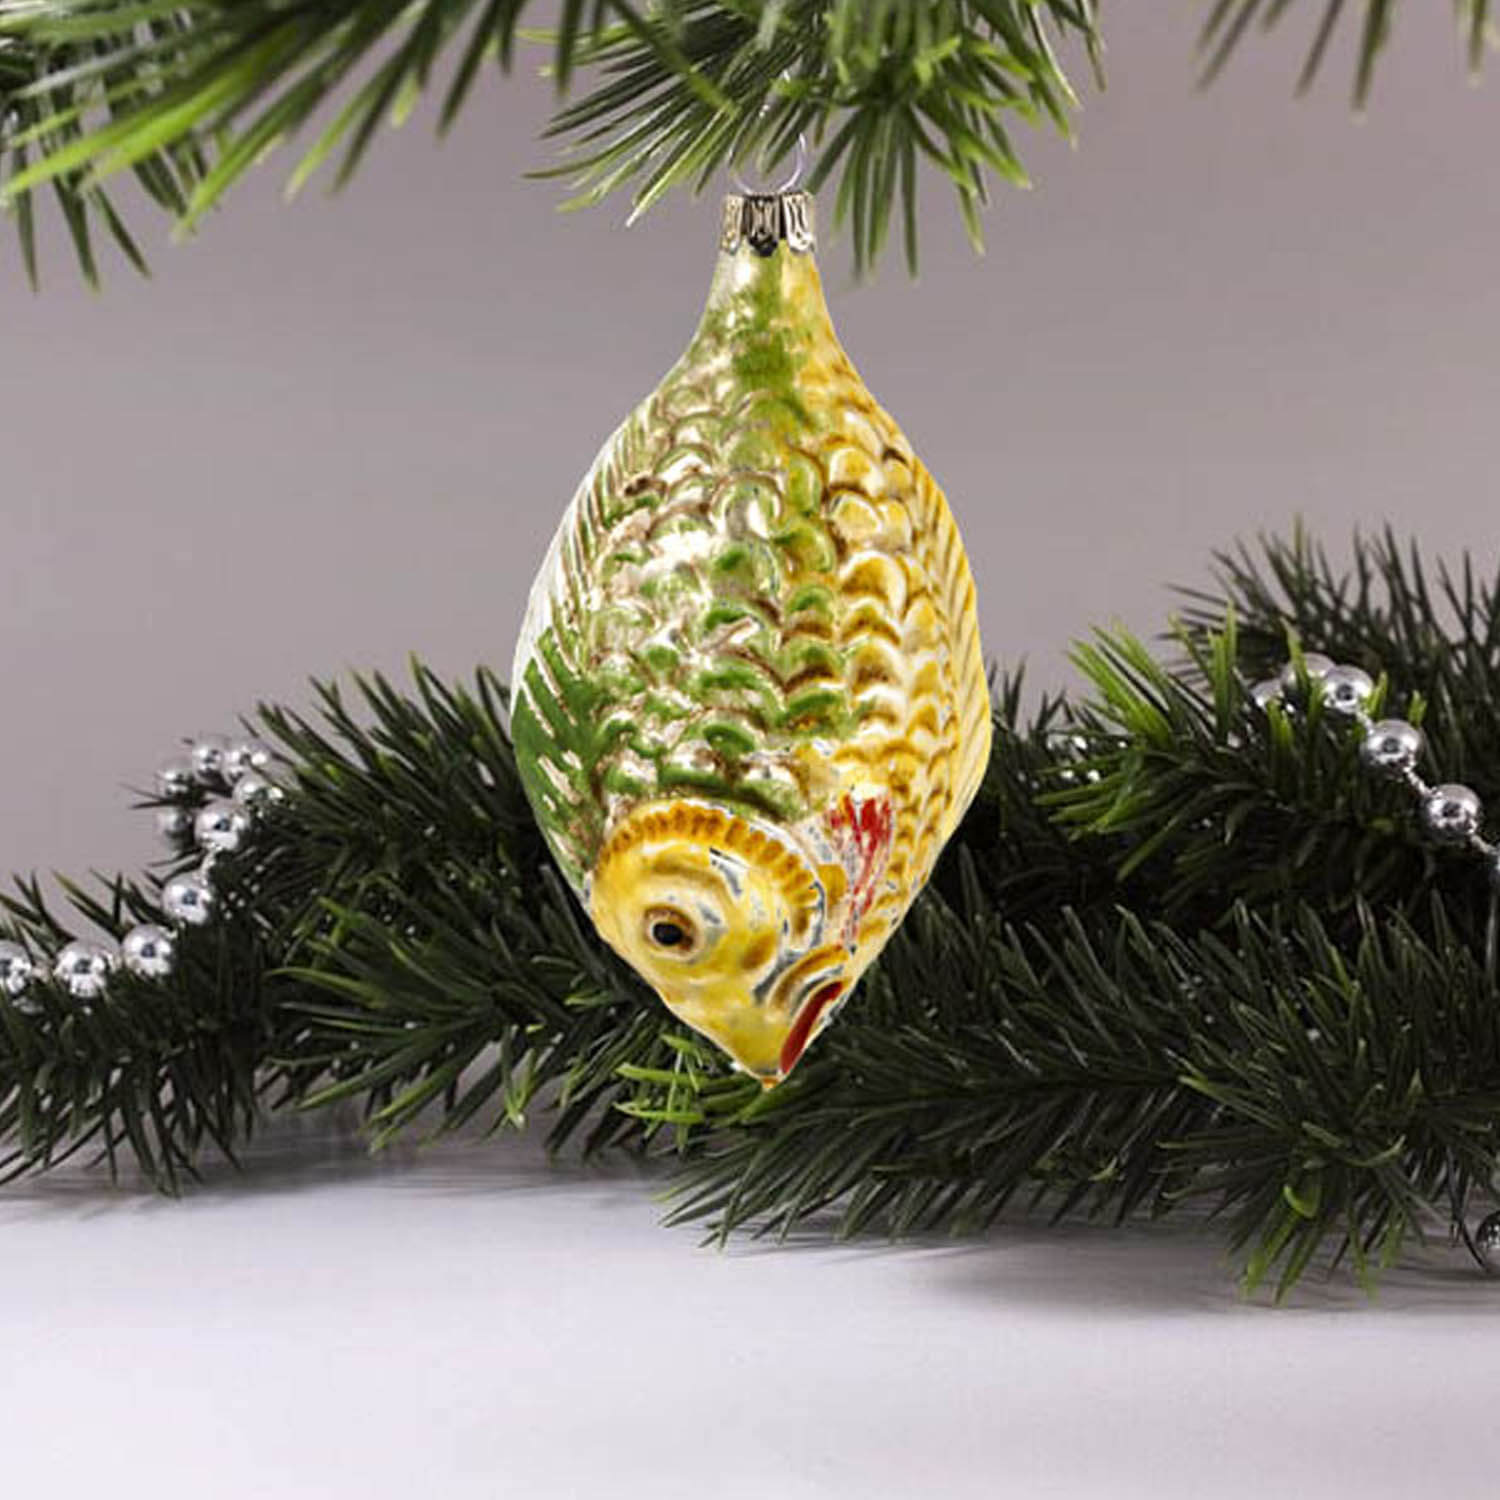 MAROLIN® - Glass ornament "Big fish"